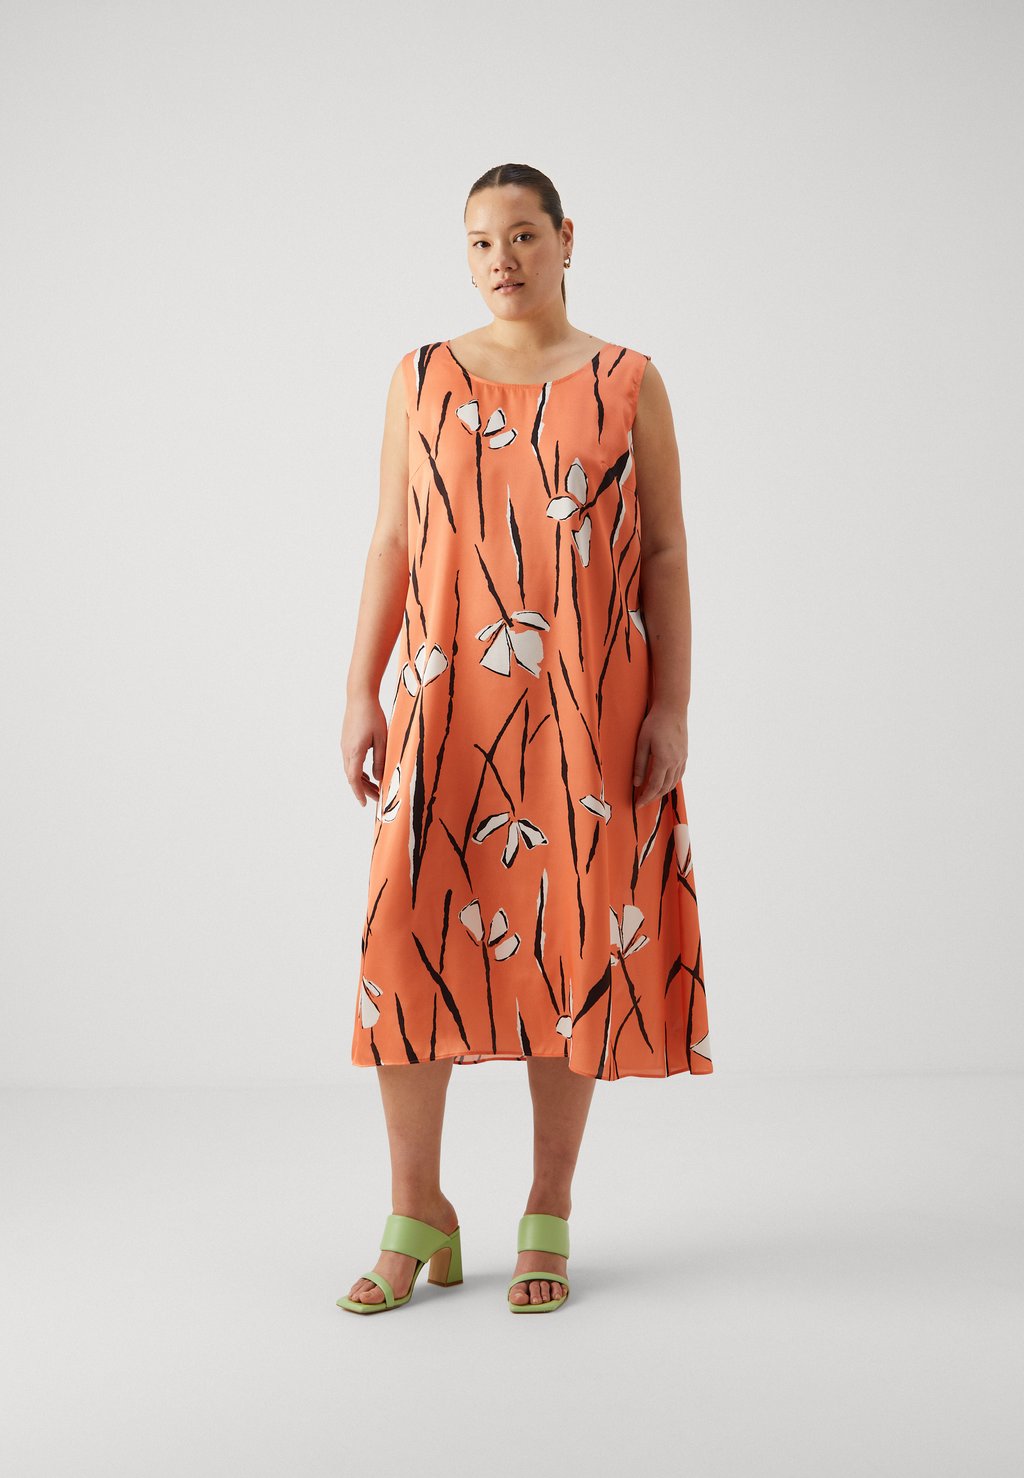 Коктейльное платье / Вечернее платье POLOMA Persona by Marina Rinaldi, оранжевый